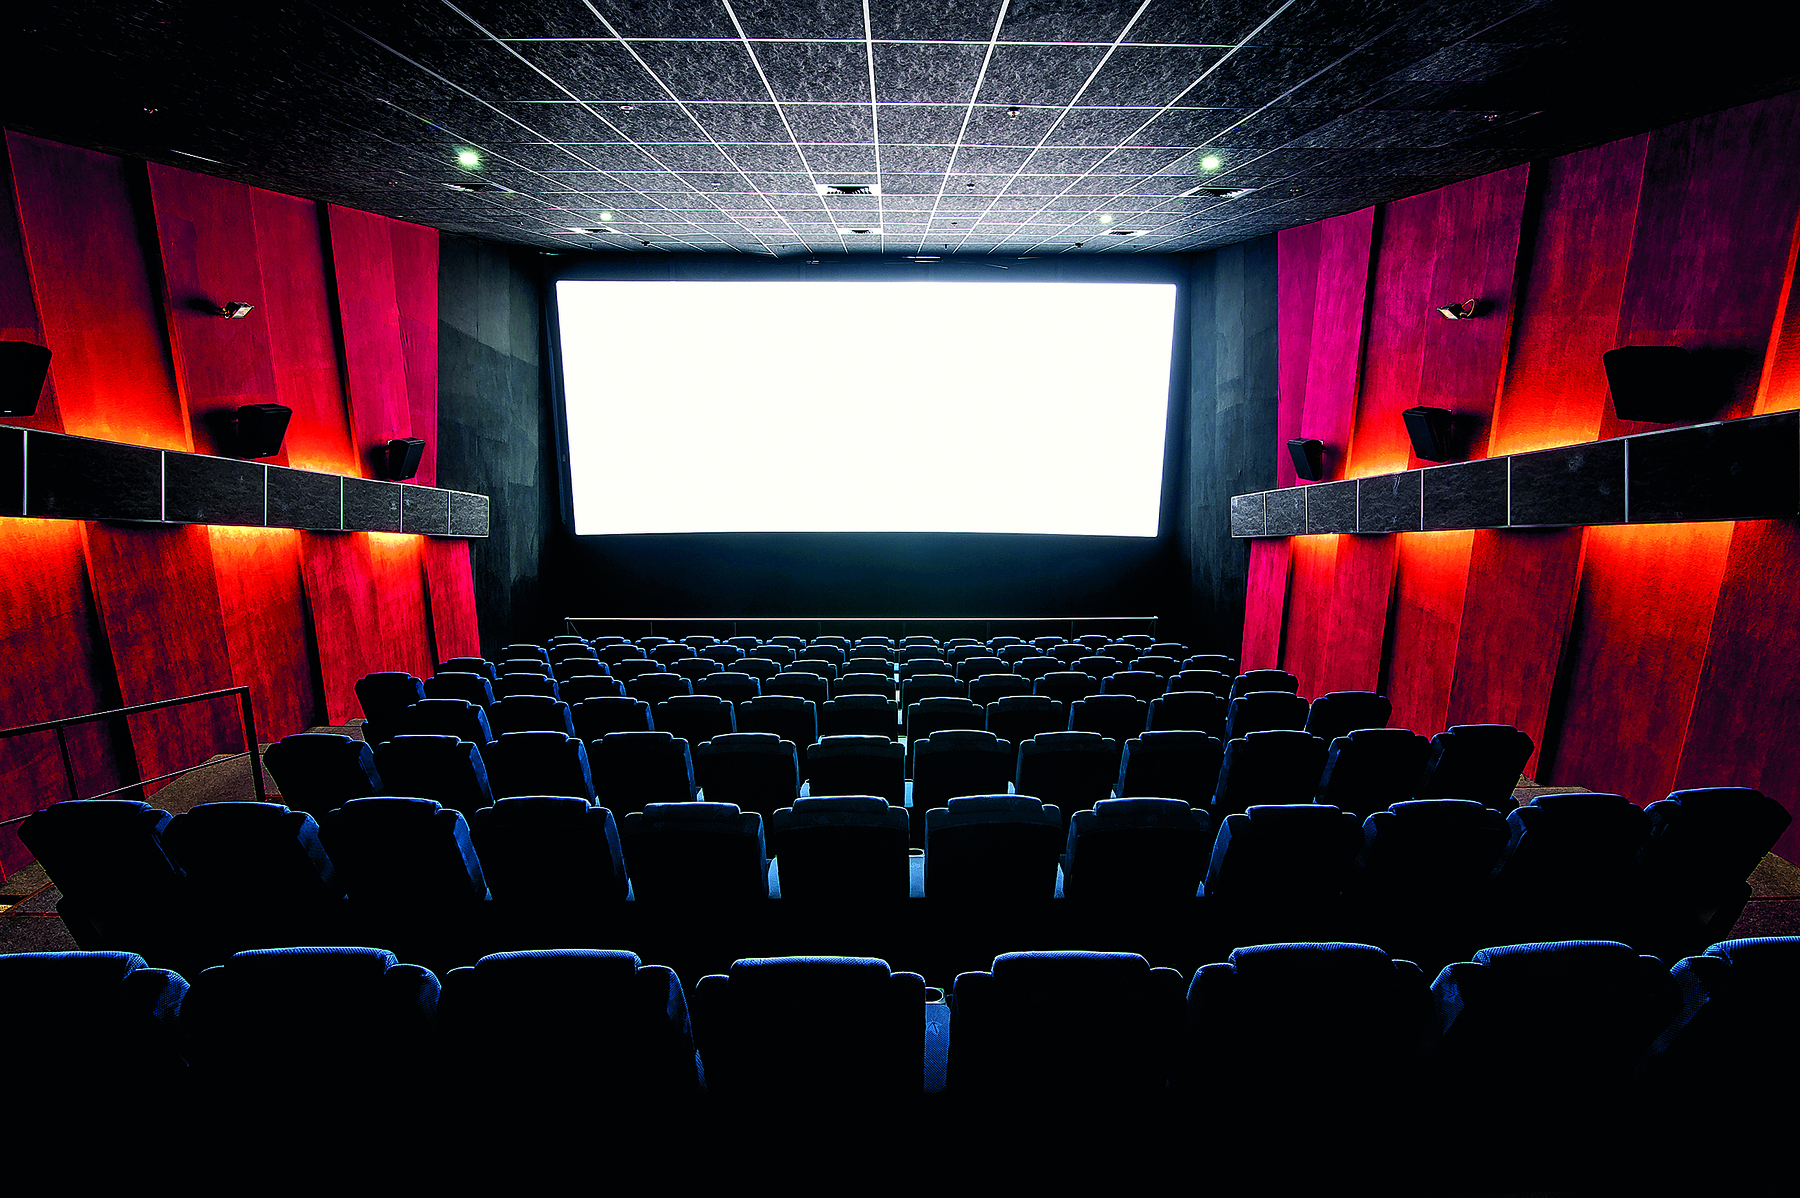 Fotografia. Sala de cinema vazia. Em primeiro plano, poltronas da plateia. Ao fundo, no centro, a tela de projeção. Nas laterais da sala, há caixas de som.